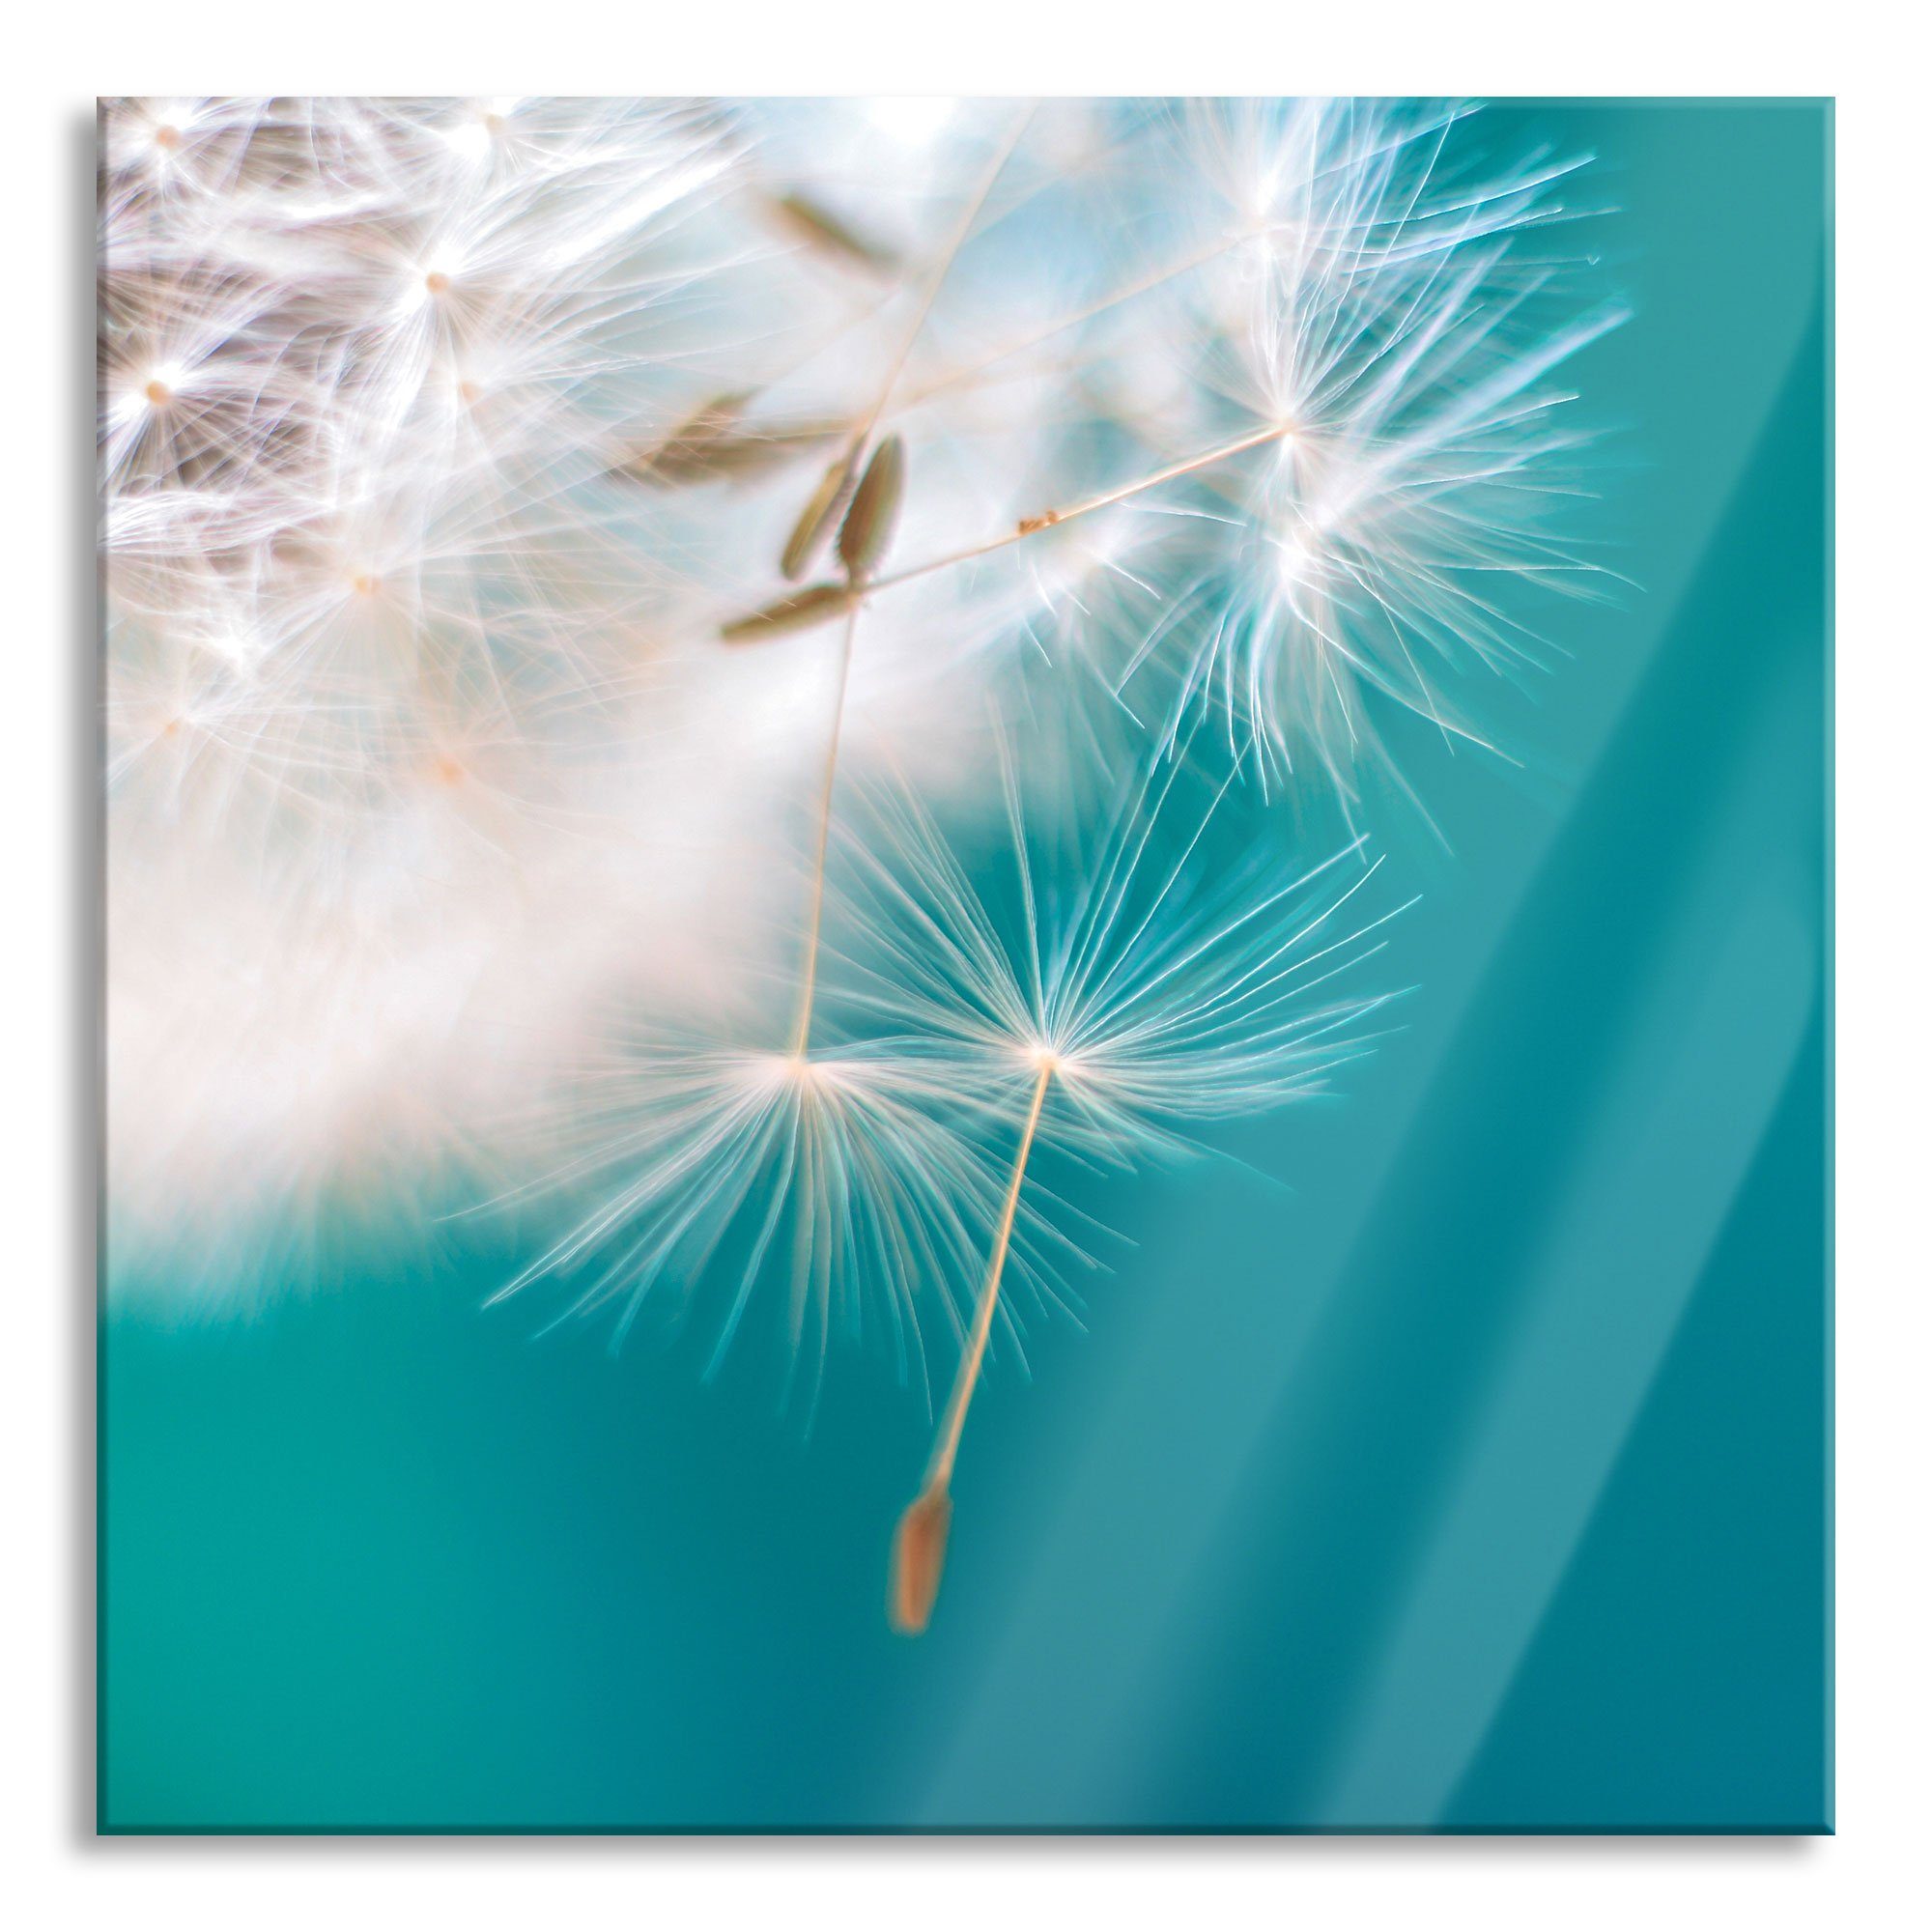 Pixxprint Glasbild Wunderschöne Pusteblume, Wunderschöne Pusteblume (1 St), Glasbild aus Echtglas, inkl. Aufhängungen und Abstandshalter